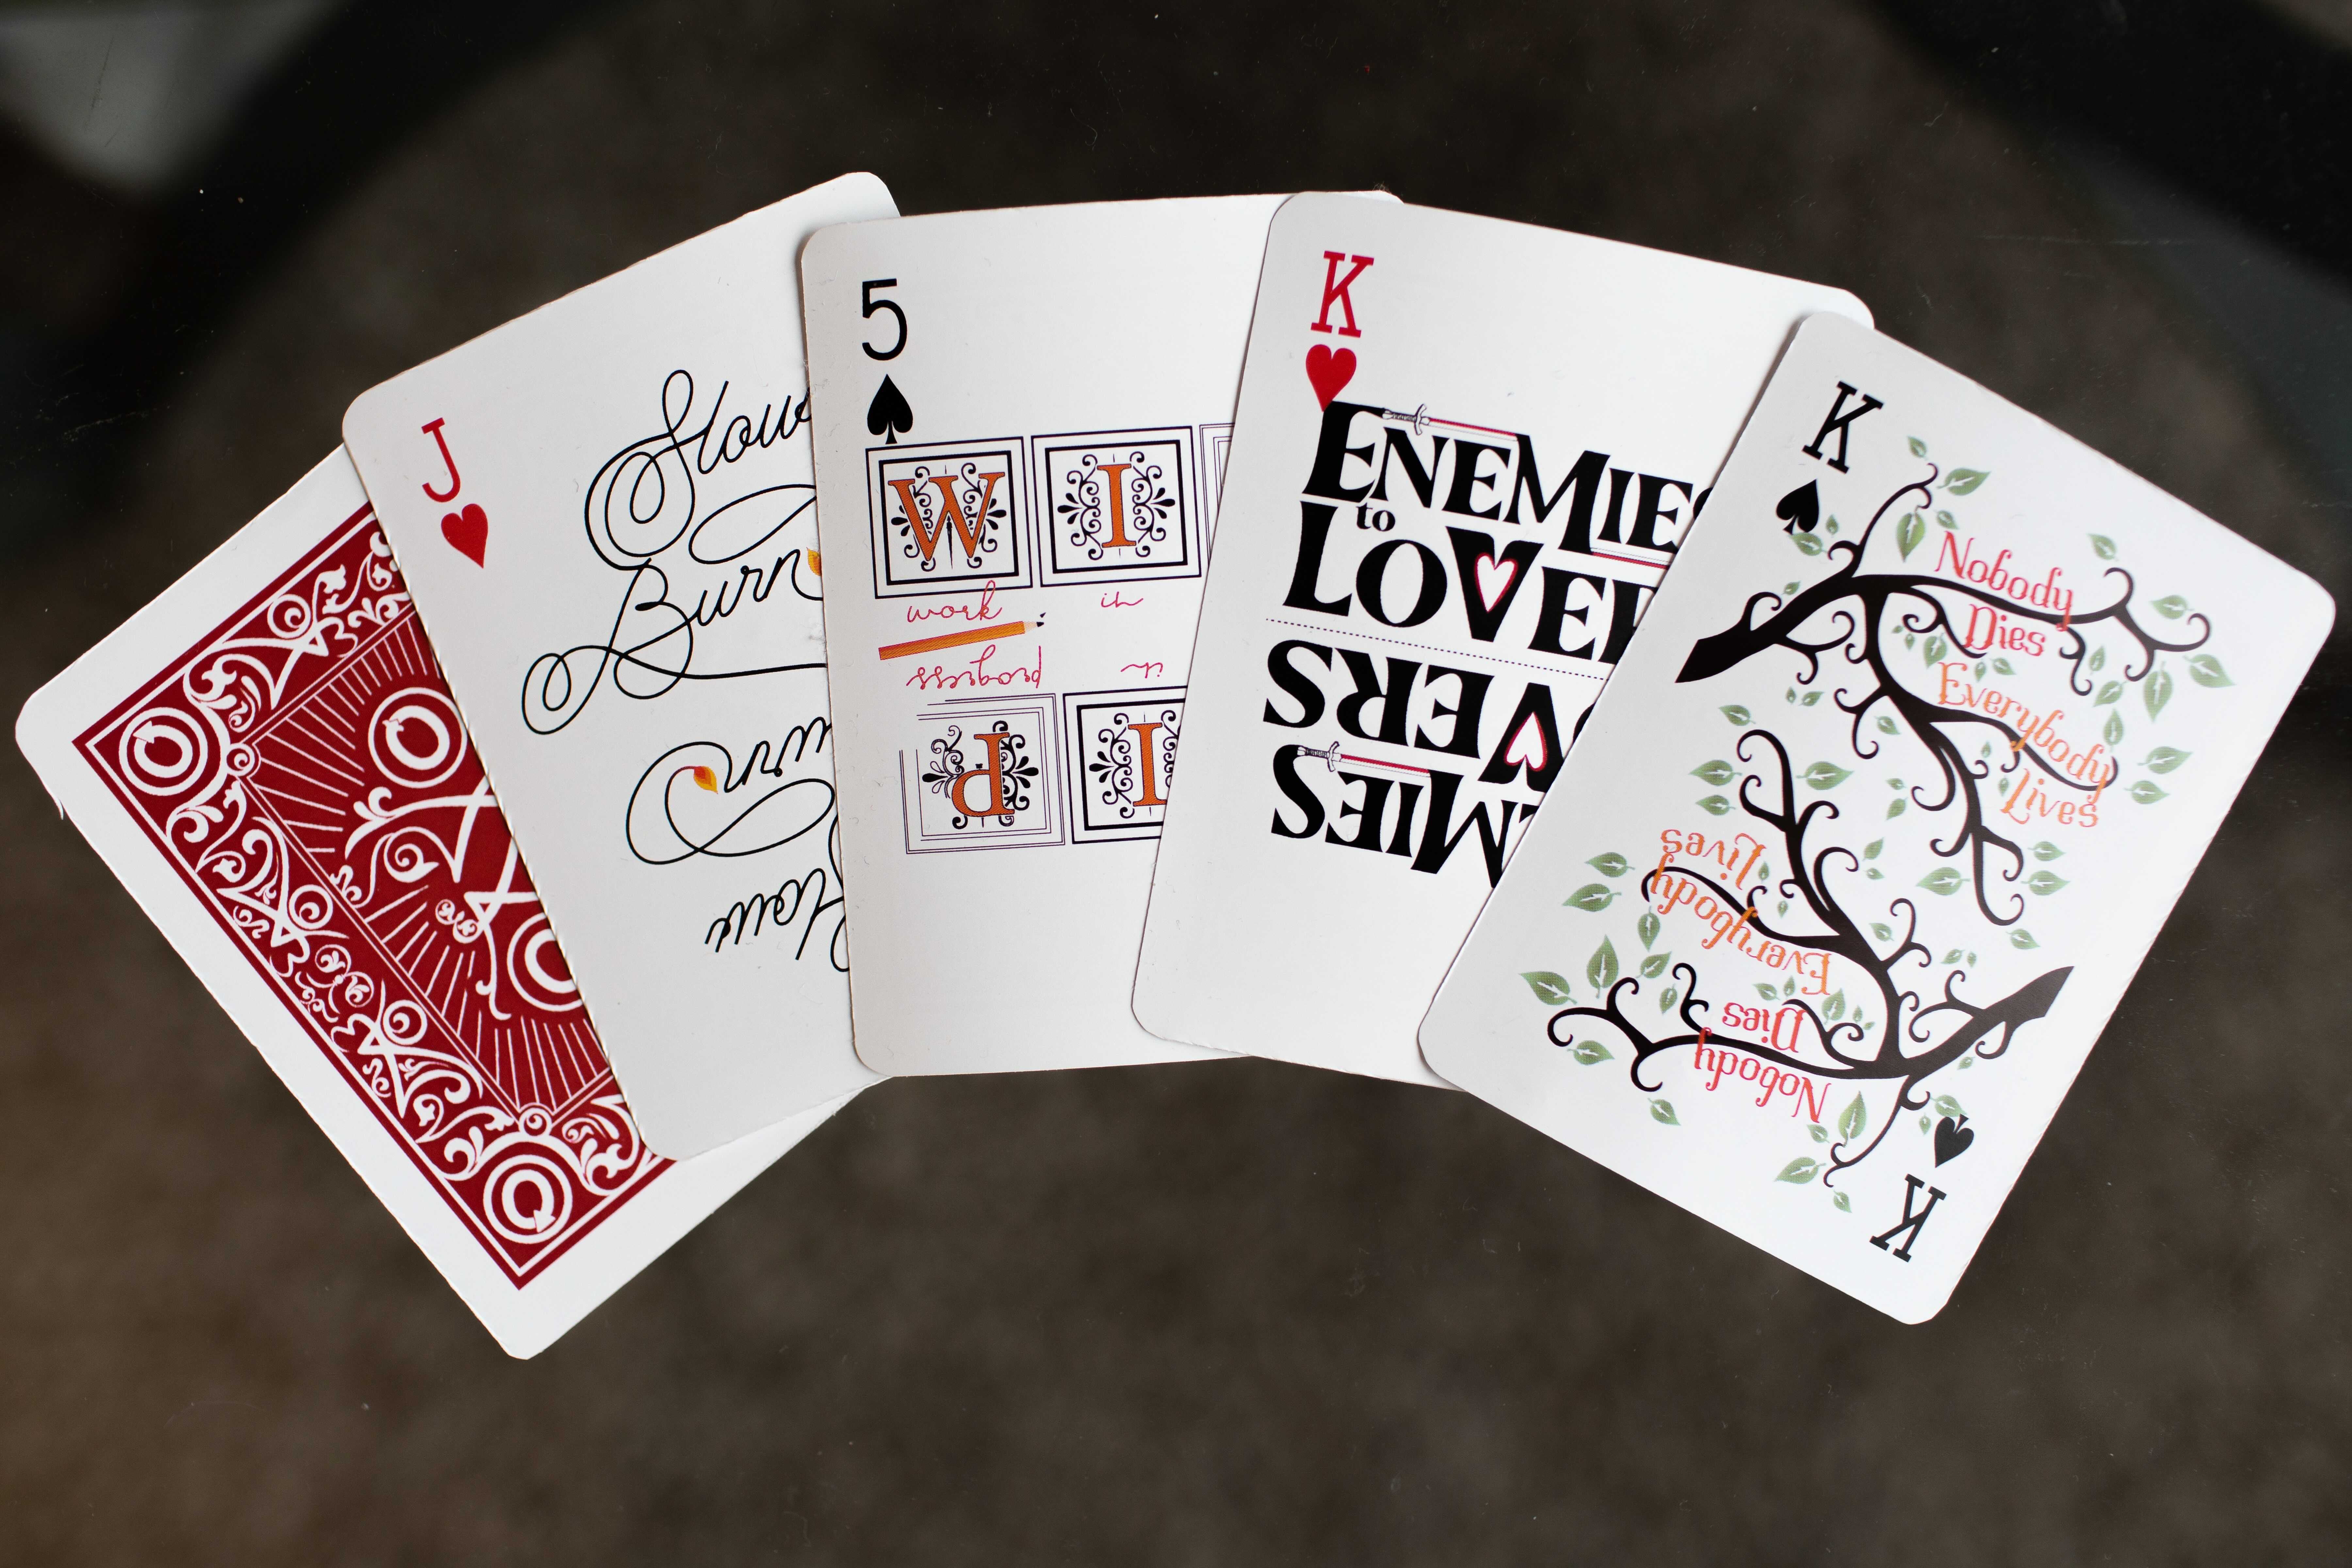 Cartes de joc il·lustrades, cadascuna representant un concepte del fàndom: "Tothom viu, ningú mor" està escrit a les branques d’un arbre, "Enemics a amants" està decorat amb espases, les inicials d’ "Obra en curs" estàn il·luminades, i l’última carta, "Combustió lenta", acaba en una flama encesa. Una carta del revés mostra la il·lustració del darrere, incloent el logotip de l’AO3.